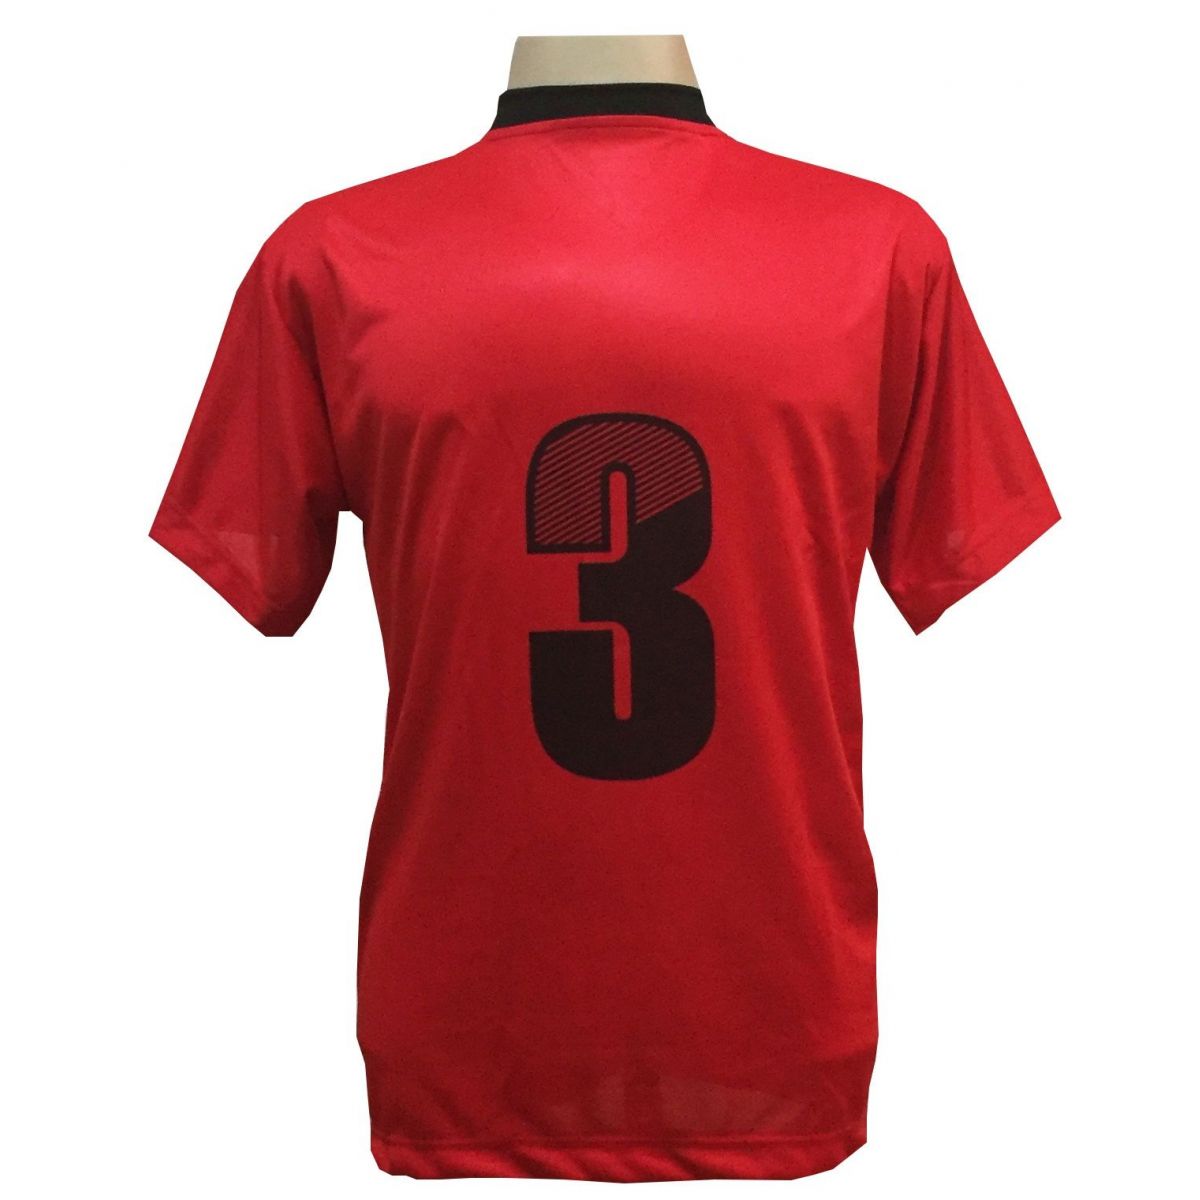 Uniforme Esportivo com 18 camisas modelo Roma Vermelho/Preto + 18 calções modelo Madrid Preto + Brindes